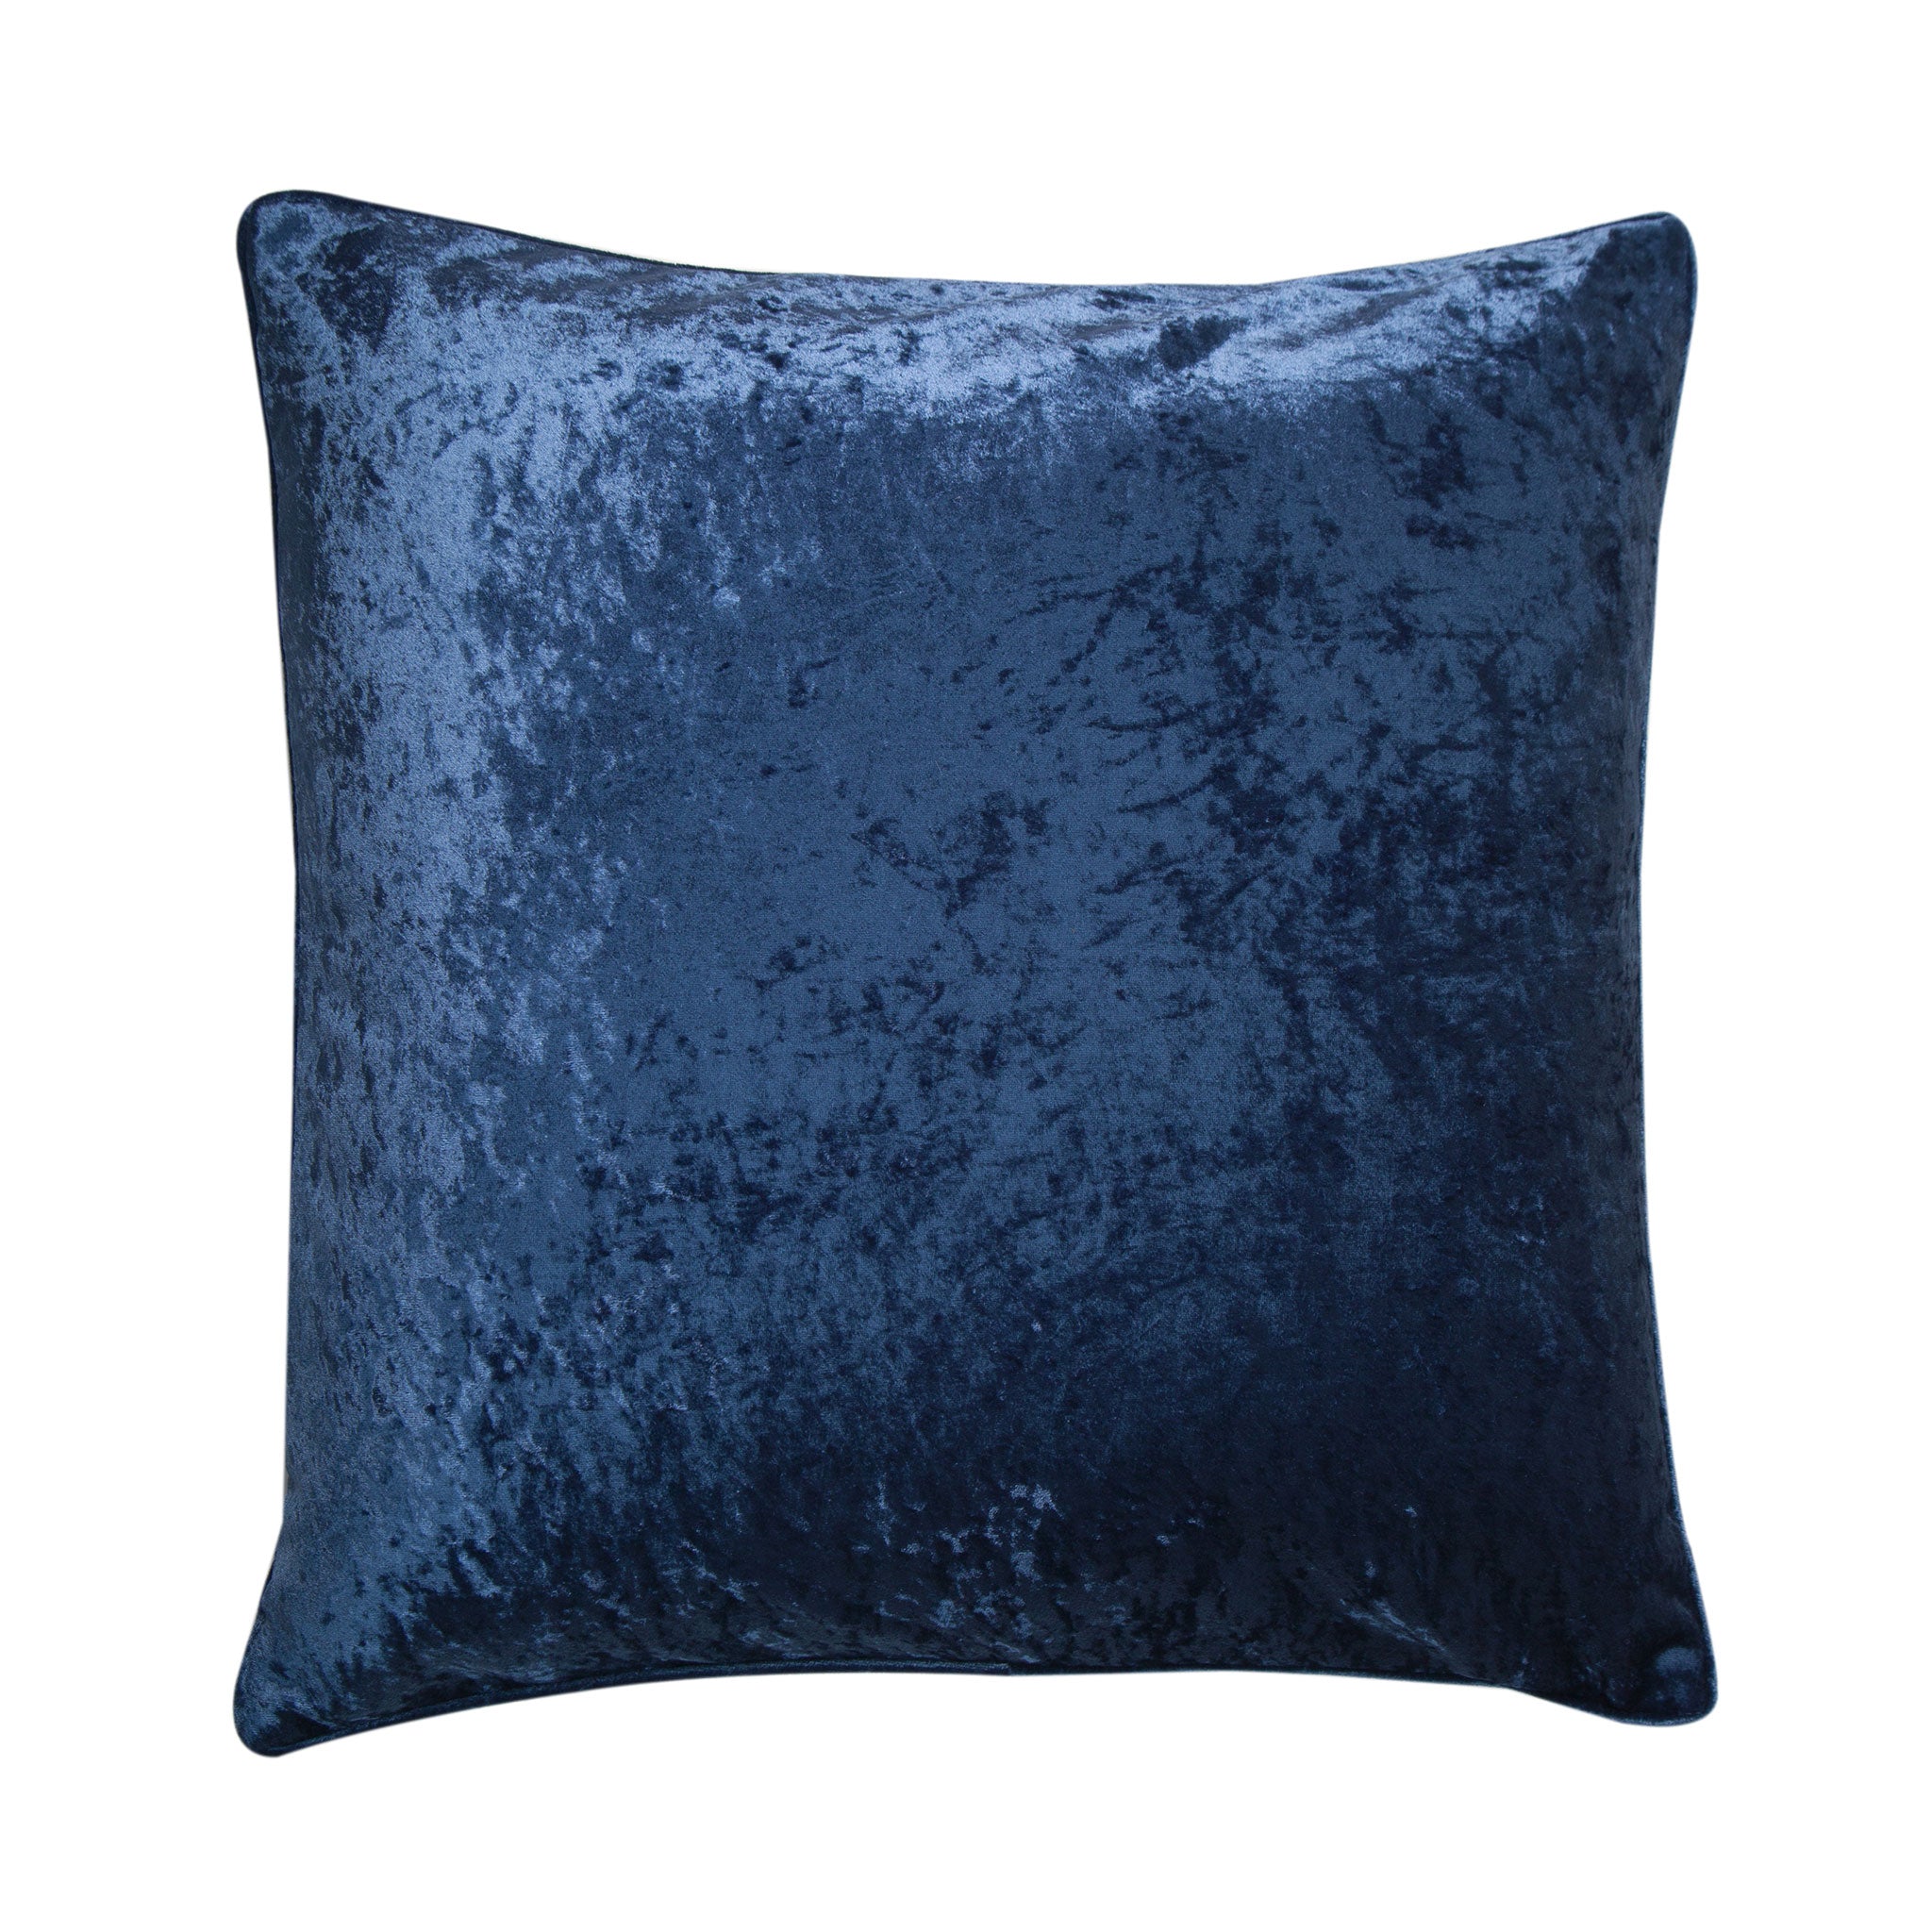 Sapphire & Light Blue Velvet Cushion